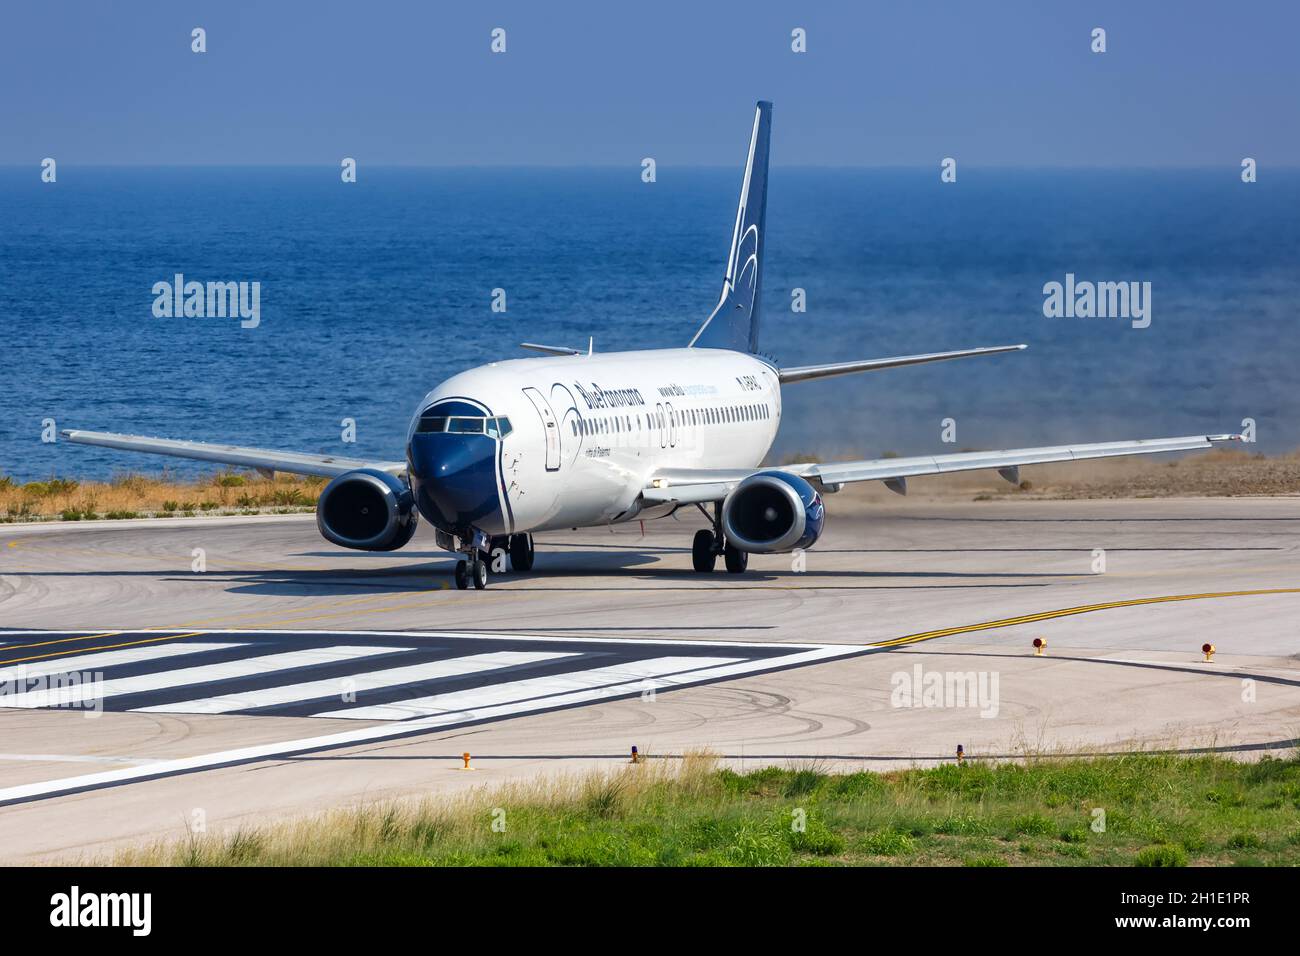 Skiathos, Grèce – 2 août 2019 : avion Blue Panorama Boeing 737-400 à l'aéroport de Skiathos (JSI) en Grèce. Boeing est une manufacture d'avions américaine Banque D'Images